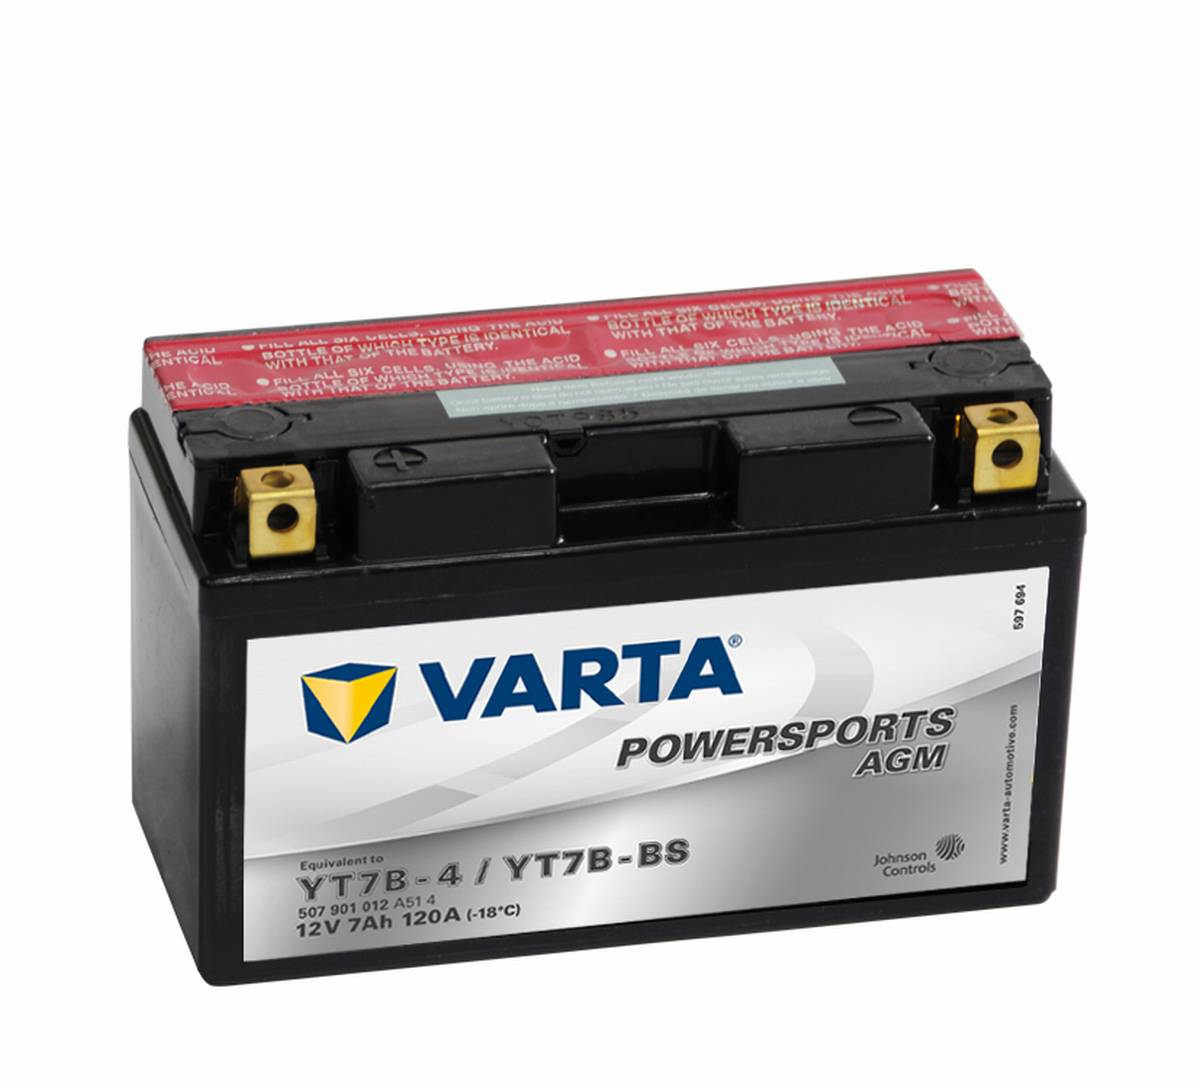 Varta Powersports AGM YT7B-4 Motorrad Batterie YT7B-BS 507901012 12V 7Ah  120A, Starterbatterie, Motorrad, Kfz, Batterien für